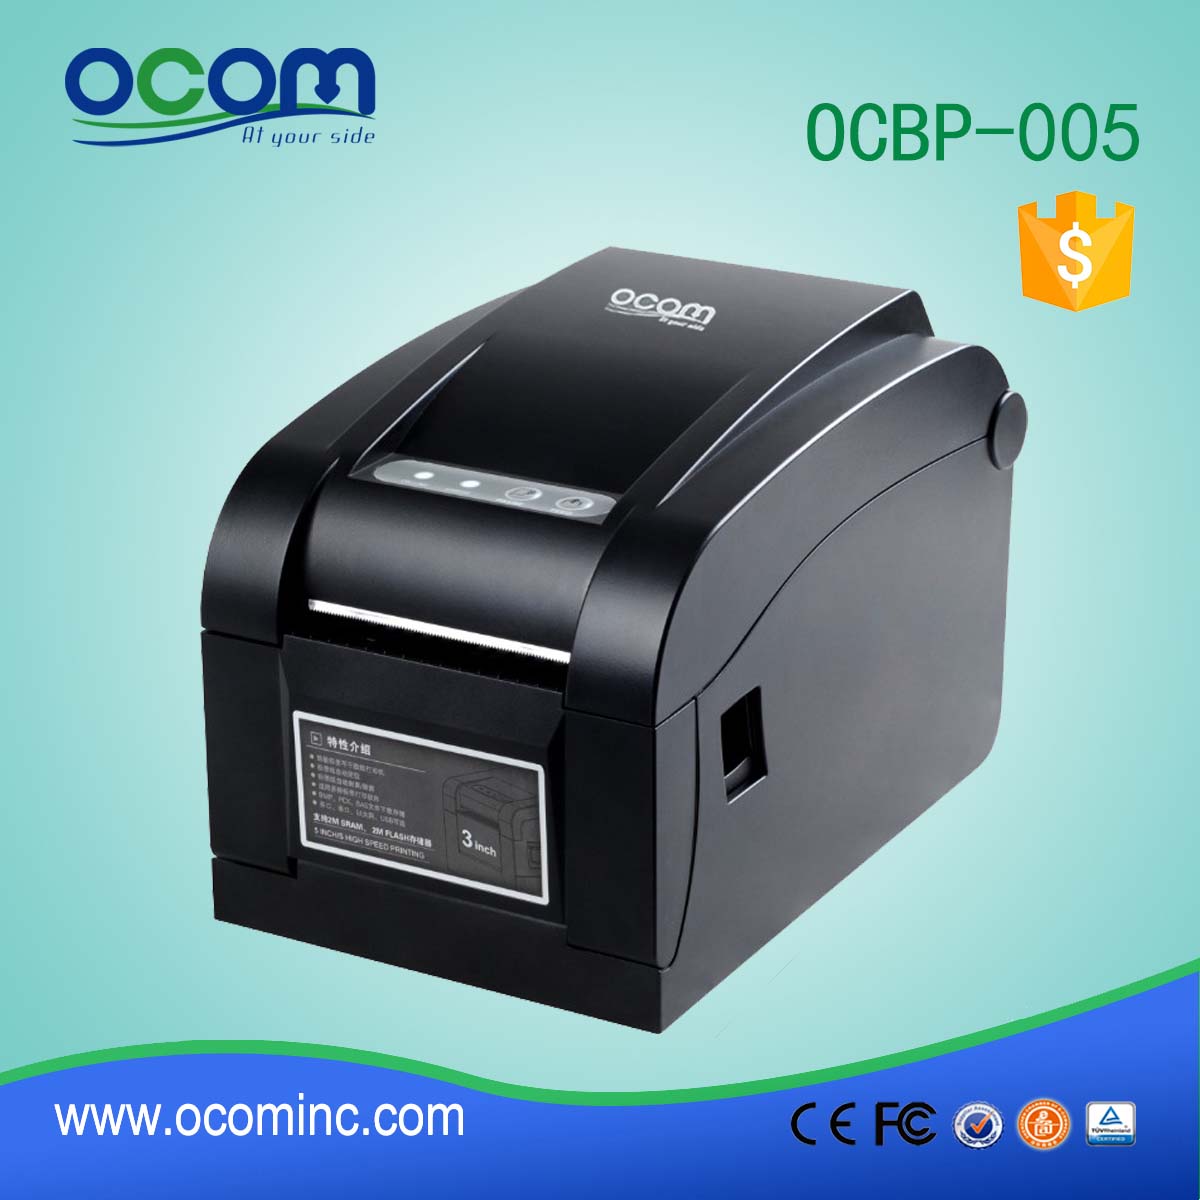 Окбп-005 80 мм наклейка со штрих-кодом/принтер тепловой маркировки